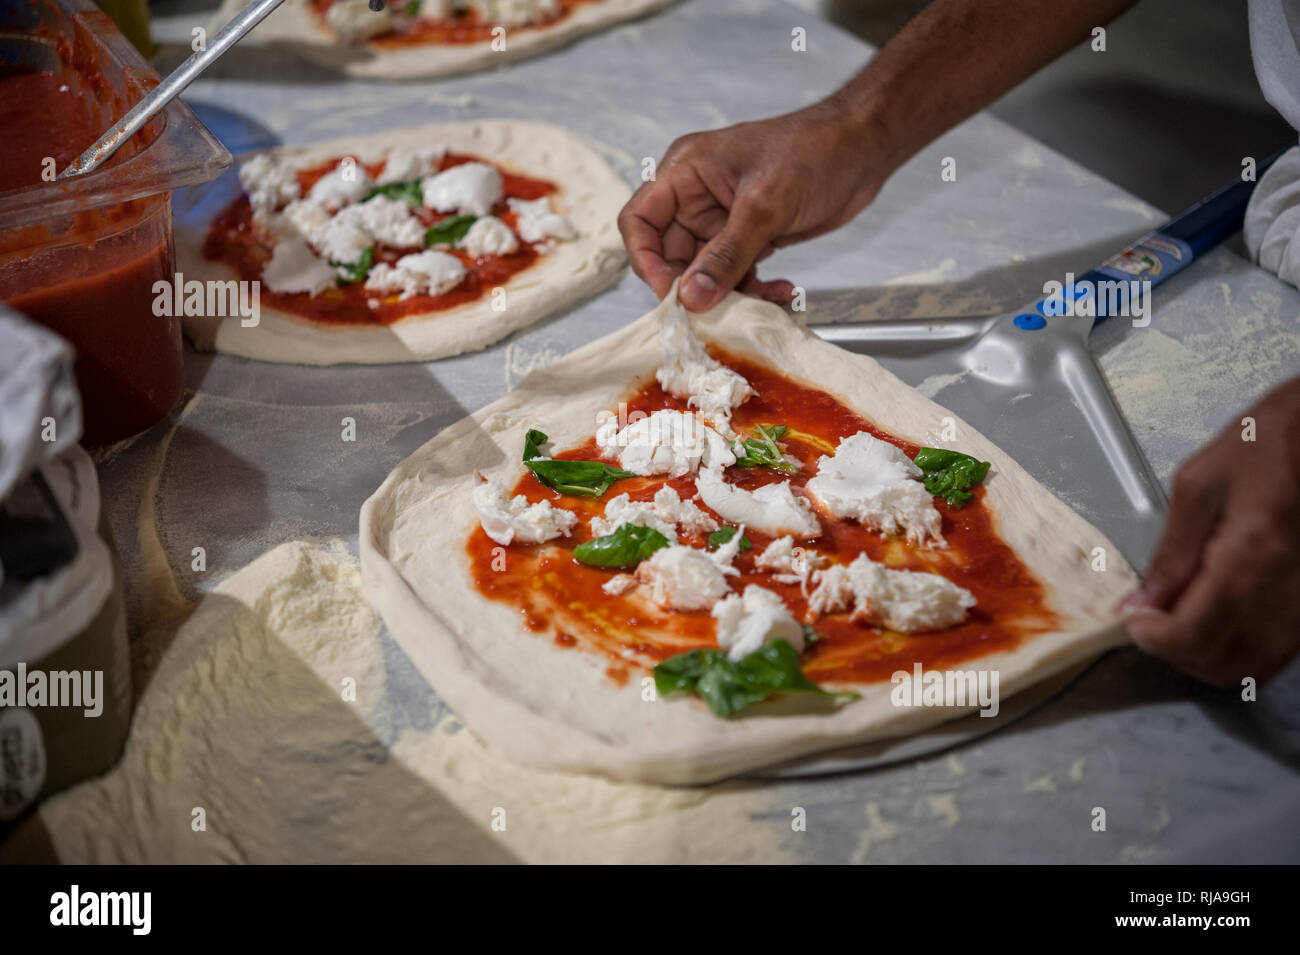 La préparation de Pizza Margherita sur un comptoir en marbre.Pizzaiolo met la pâte à pizza sur la pelure. Selective focus Banque D'Images